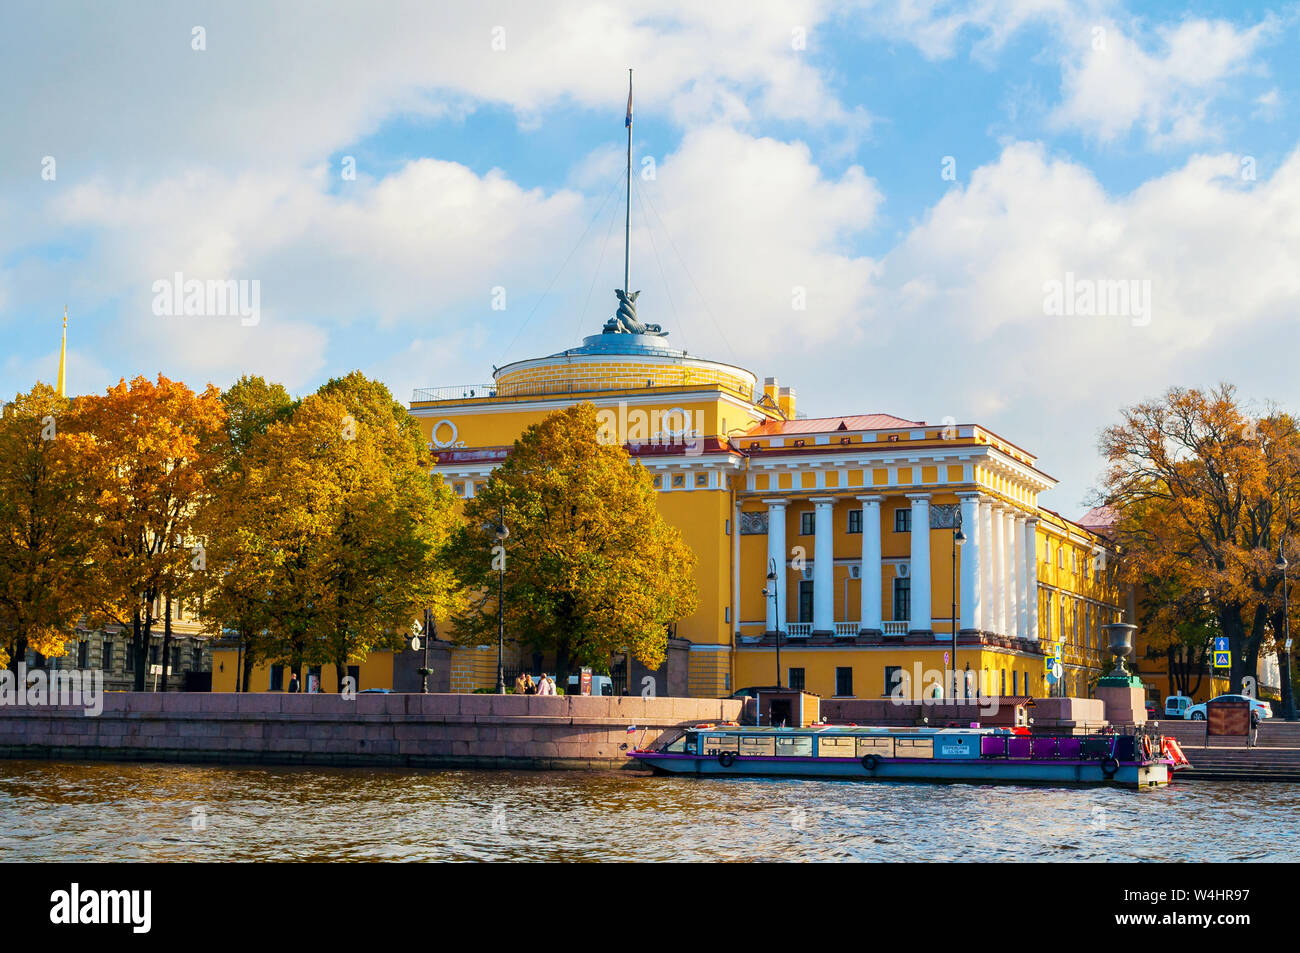 Saint-pétersbourg, Russie - 3 octobre 2016. L'Admiralty Arch sur le quai de la Neva à Saint-Pétersbourg, Russie. Landmark Architecture de Saint Peters Banque D'Images